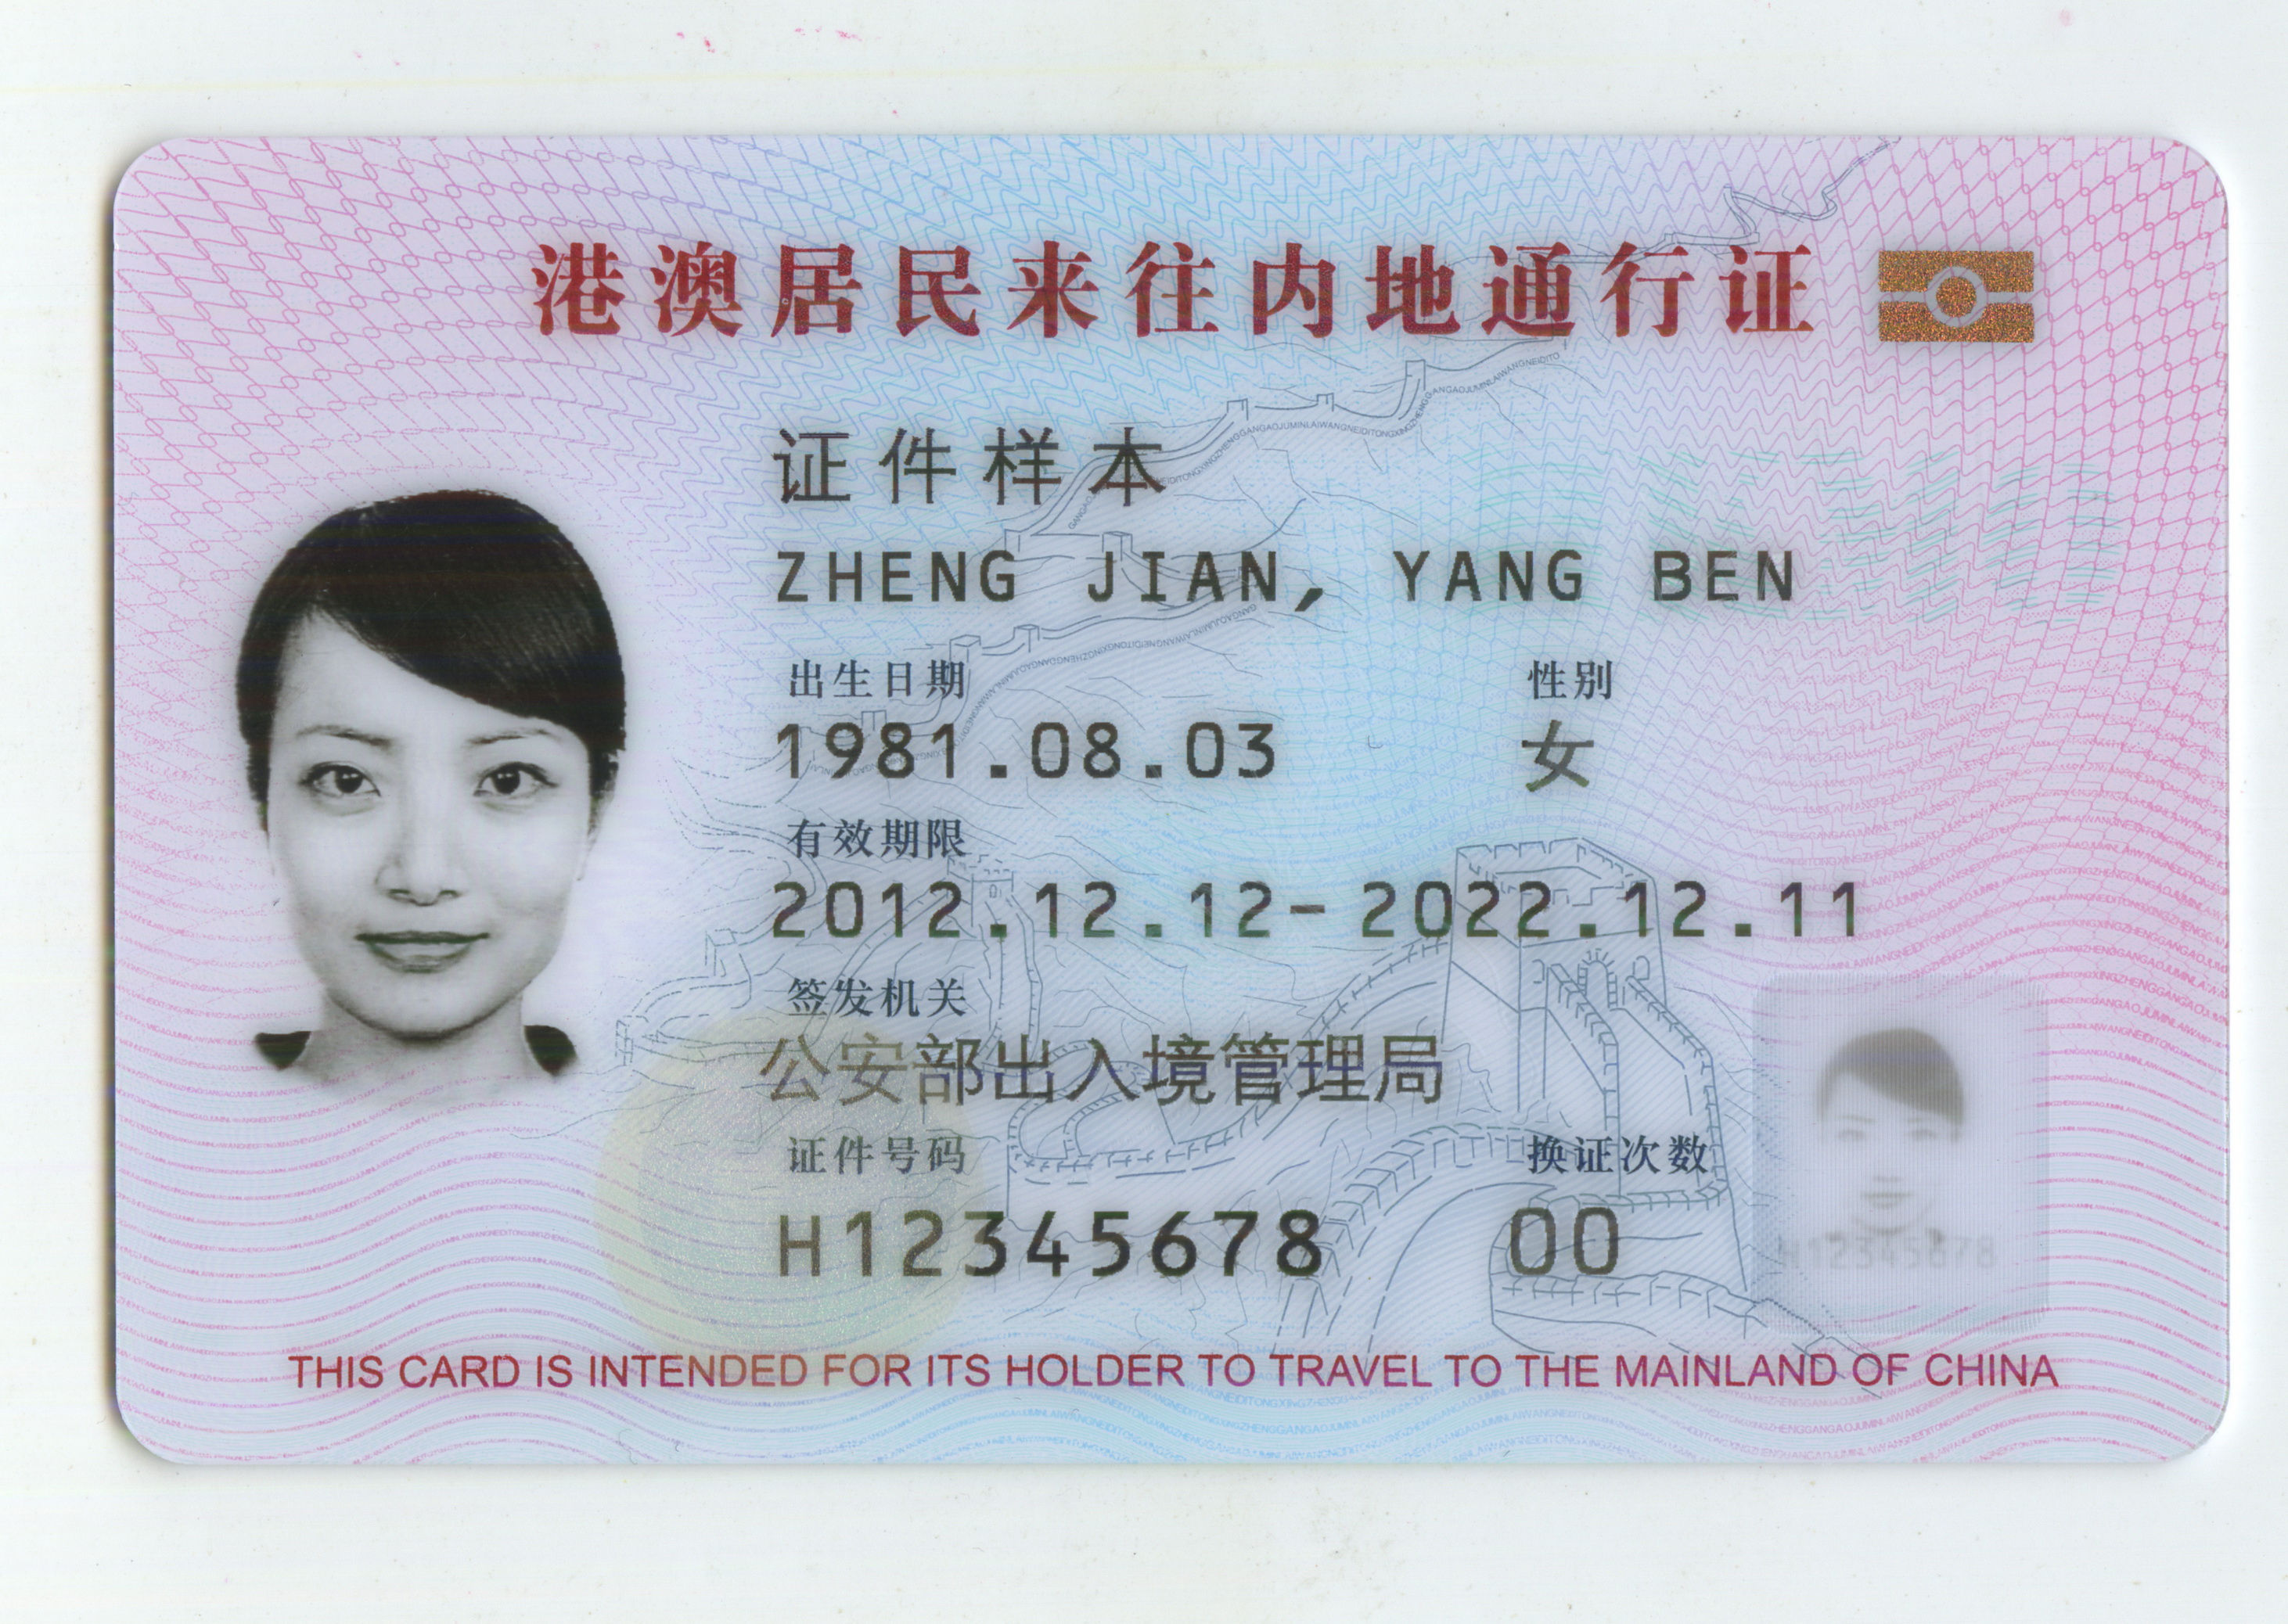 台湾居民居住证号码图片